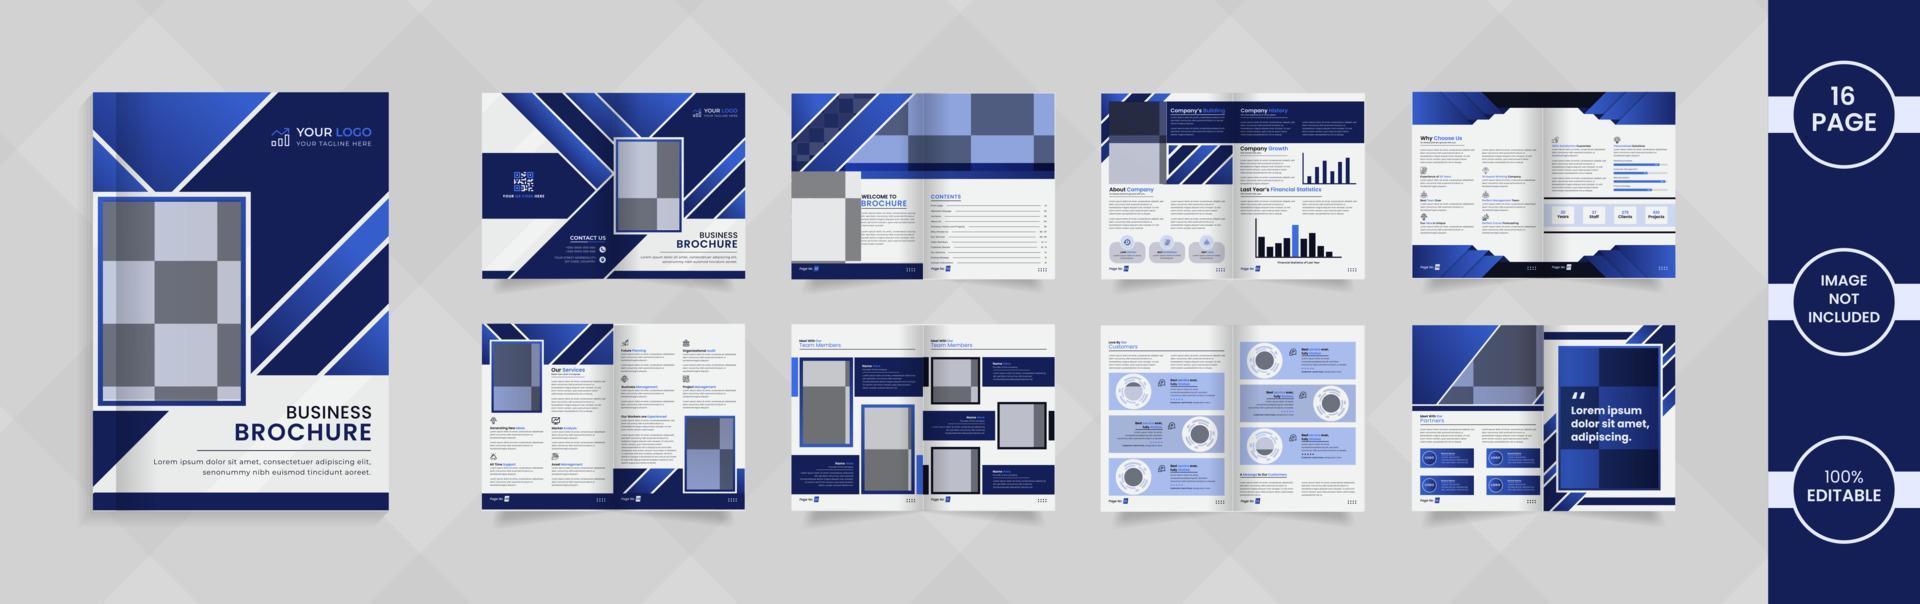 modernes 16-seitiges Firmenbroschürendesign mit abstrakten Formen und Informationen in blauer Farbverlaufsfarbe. vektor